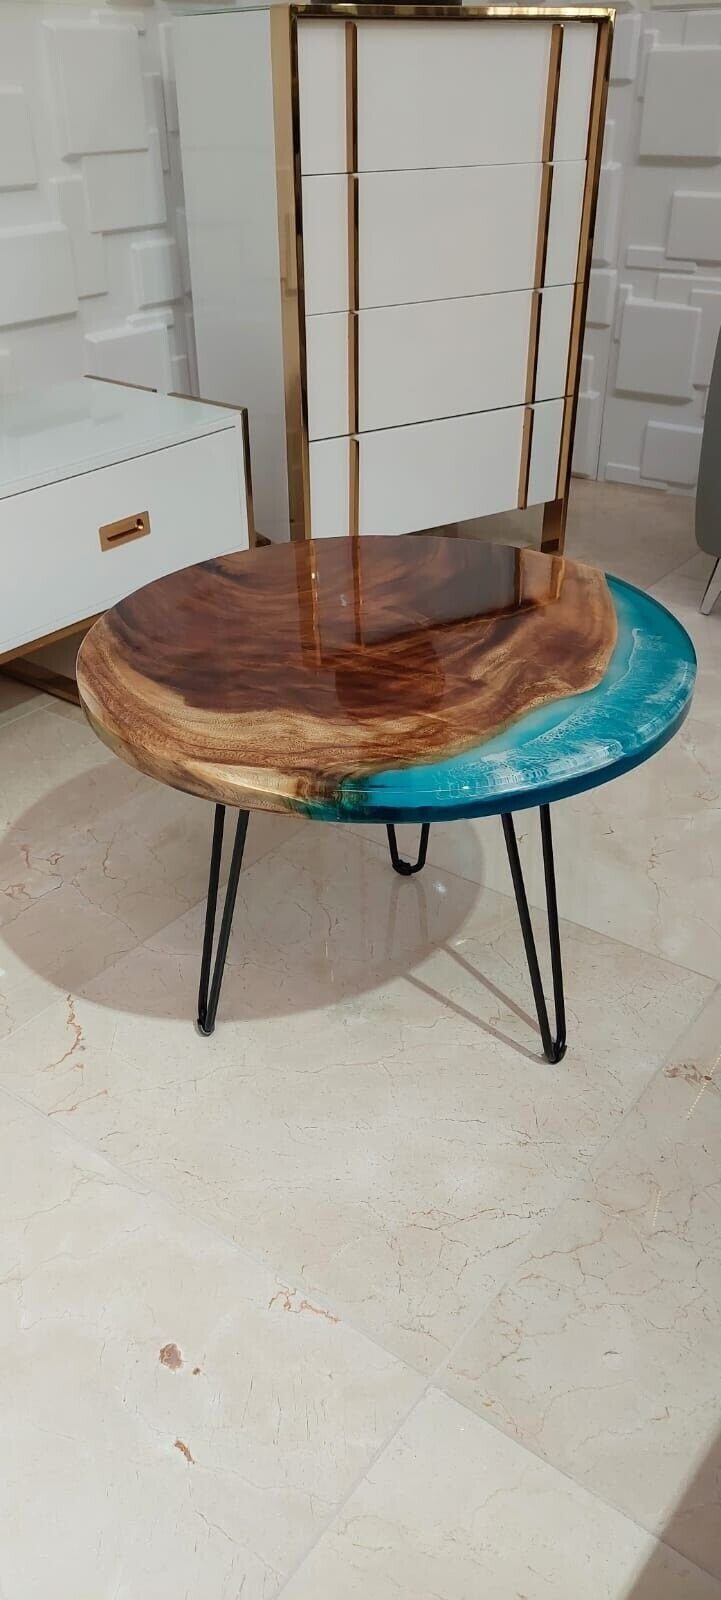 Harz Wohnzimmer Couchtisch Couchtisch Holz in Tisch Tische Sofort (Couchtisch), Made JVmoebel Möbel Handarbeit Europe